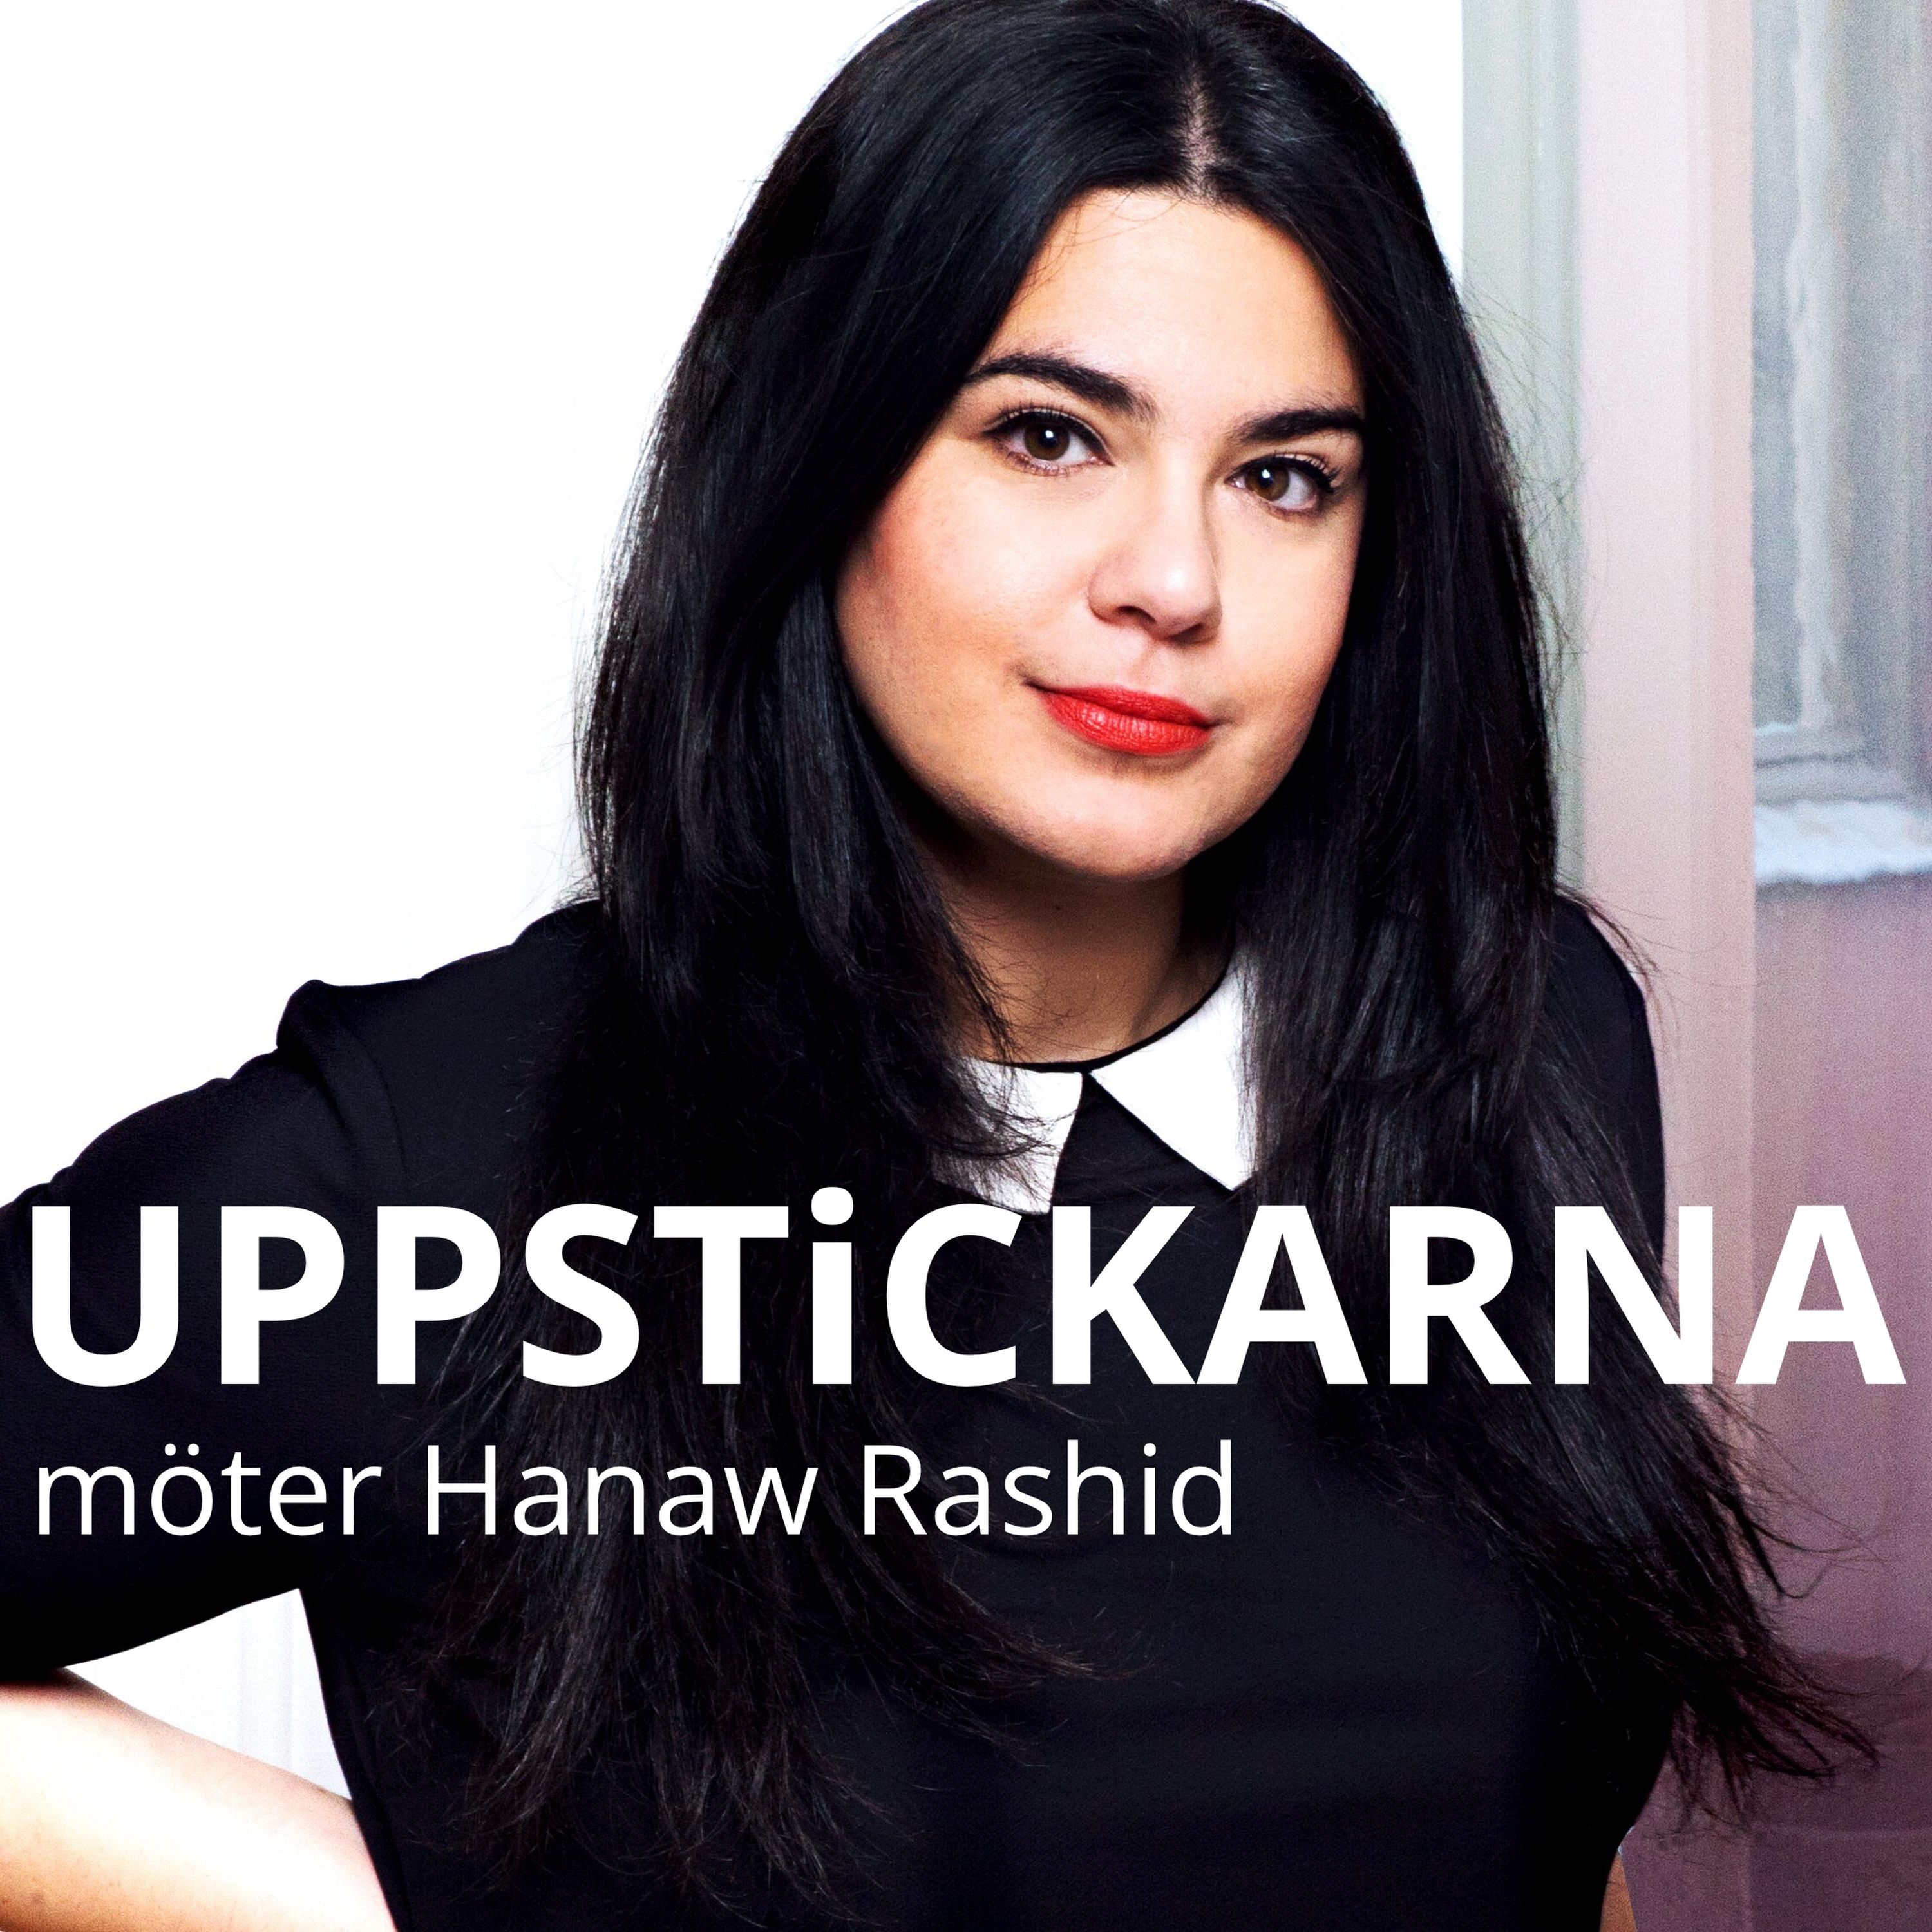 Uppstickarna möter Hanaw Rashid